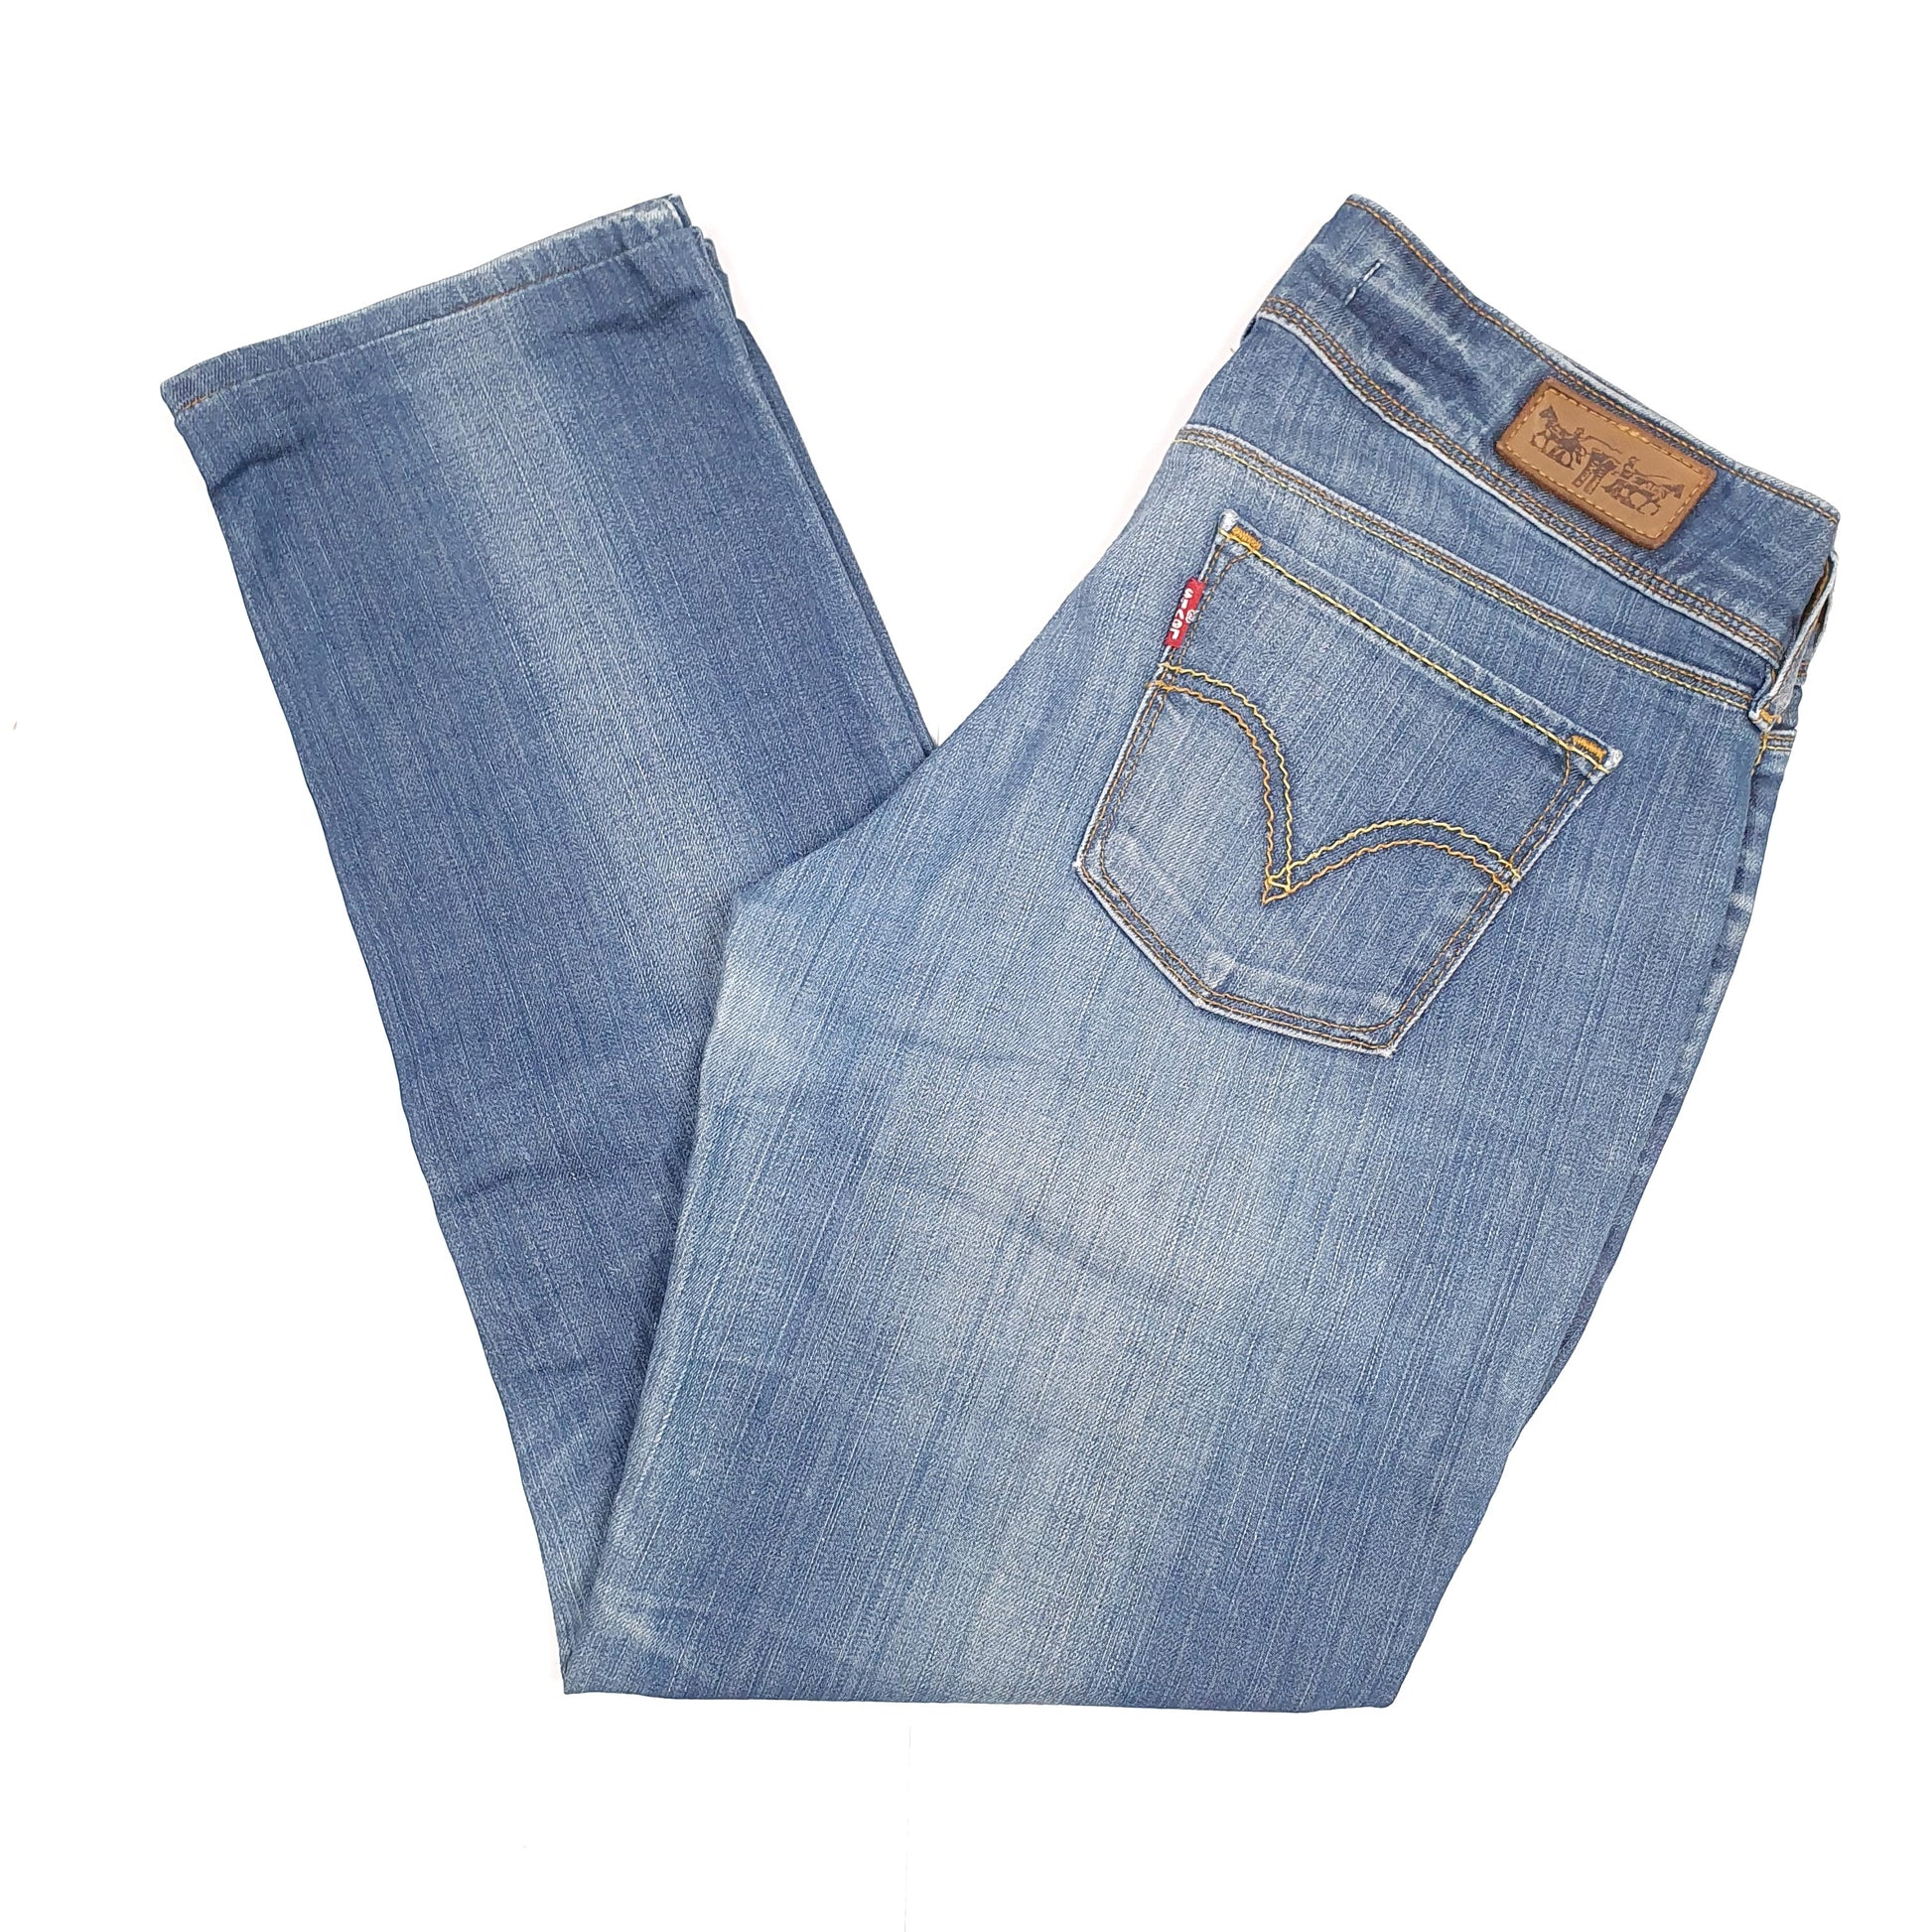 Blue Levis 571 Jeans